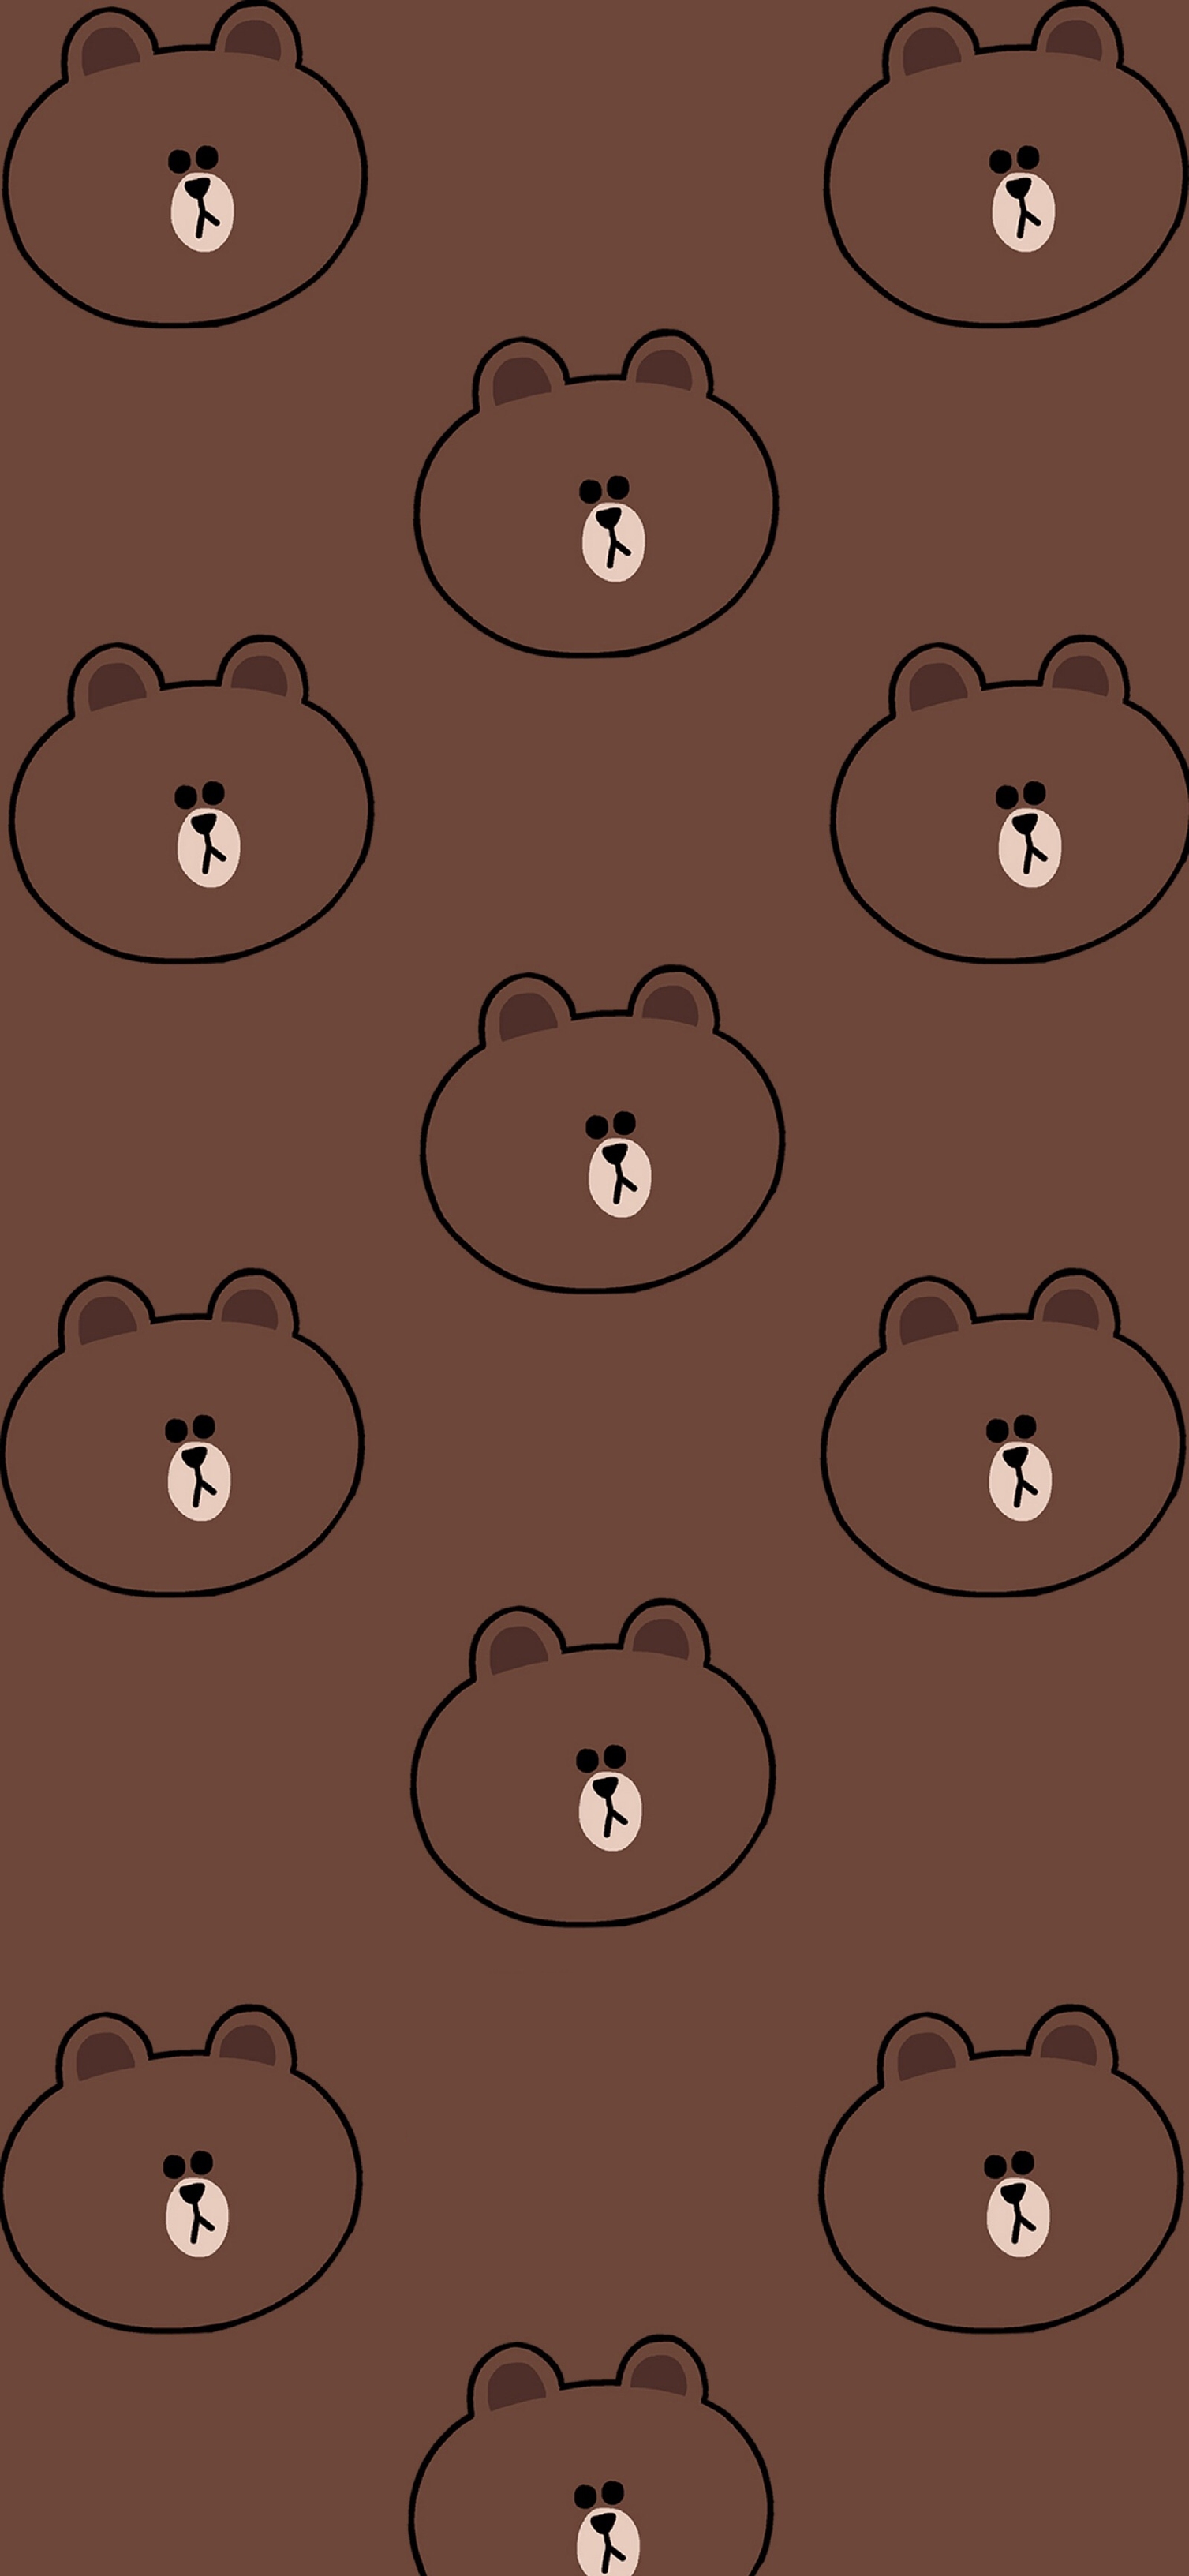 布朗熊壁纸微信图片